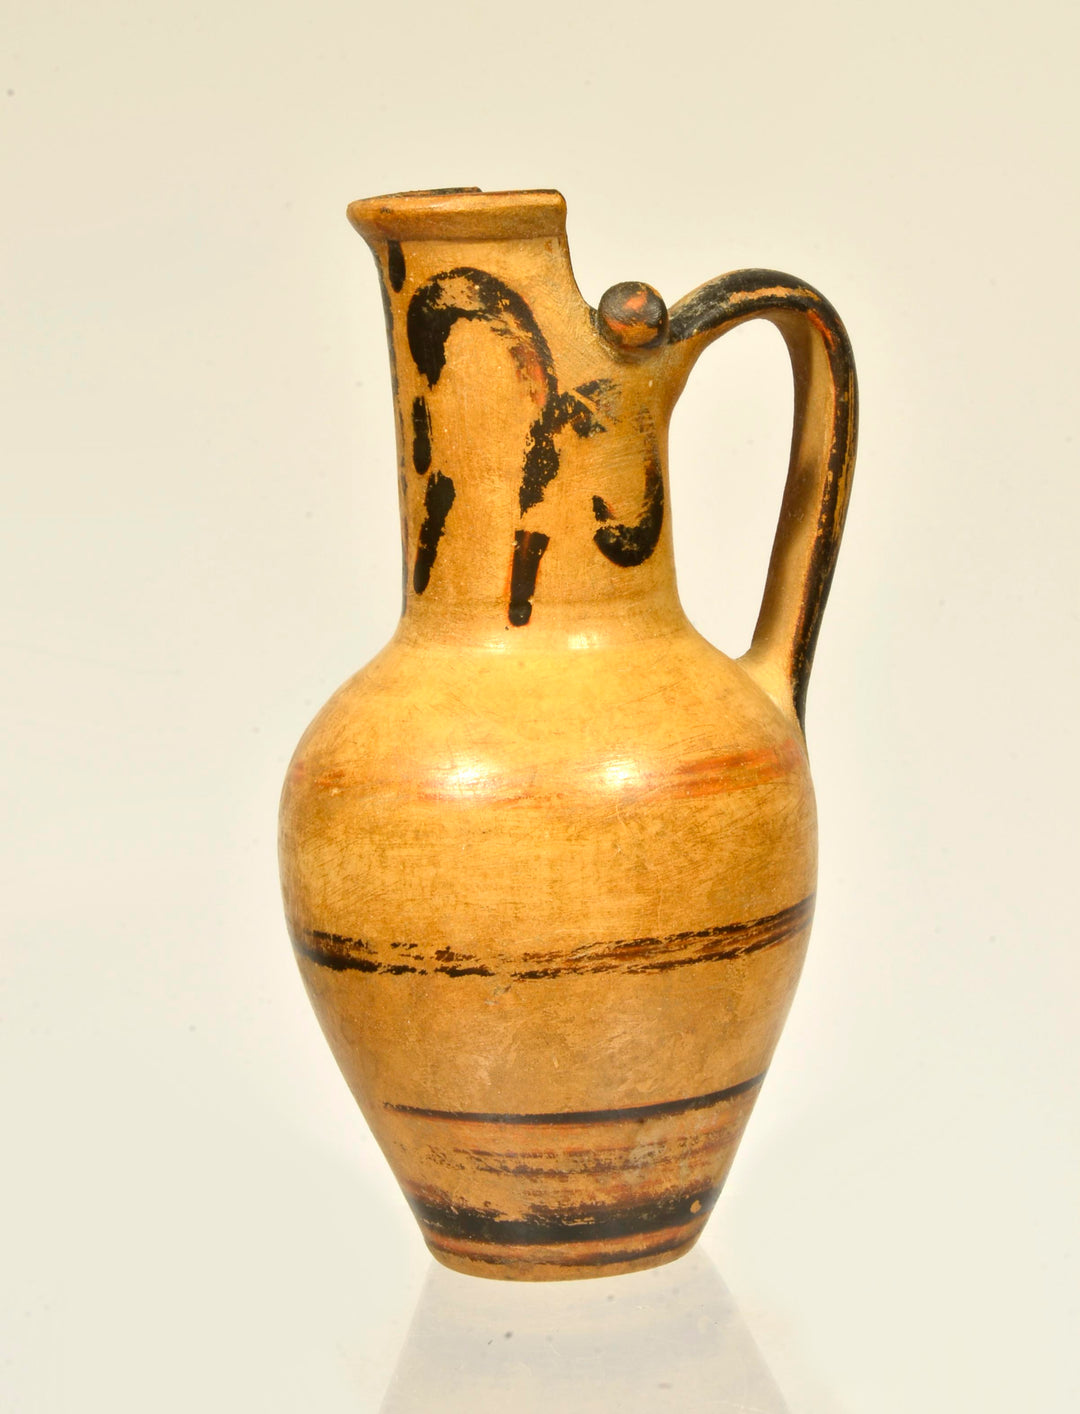 Faliscan Pottery Beaker Oinochoe